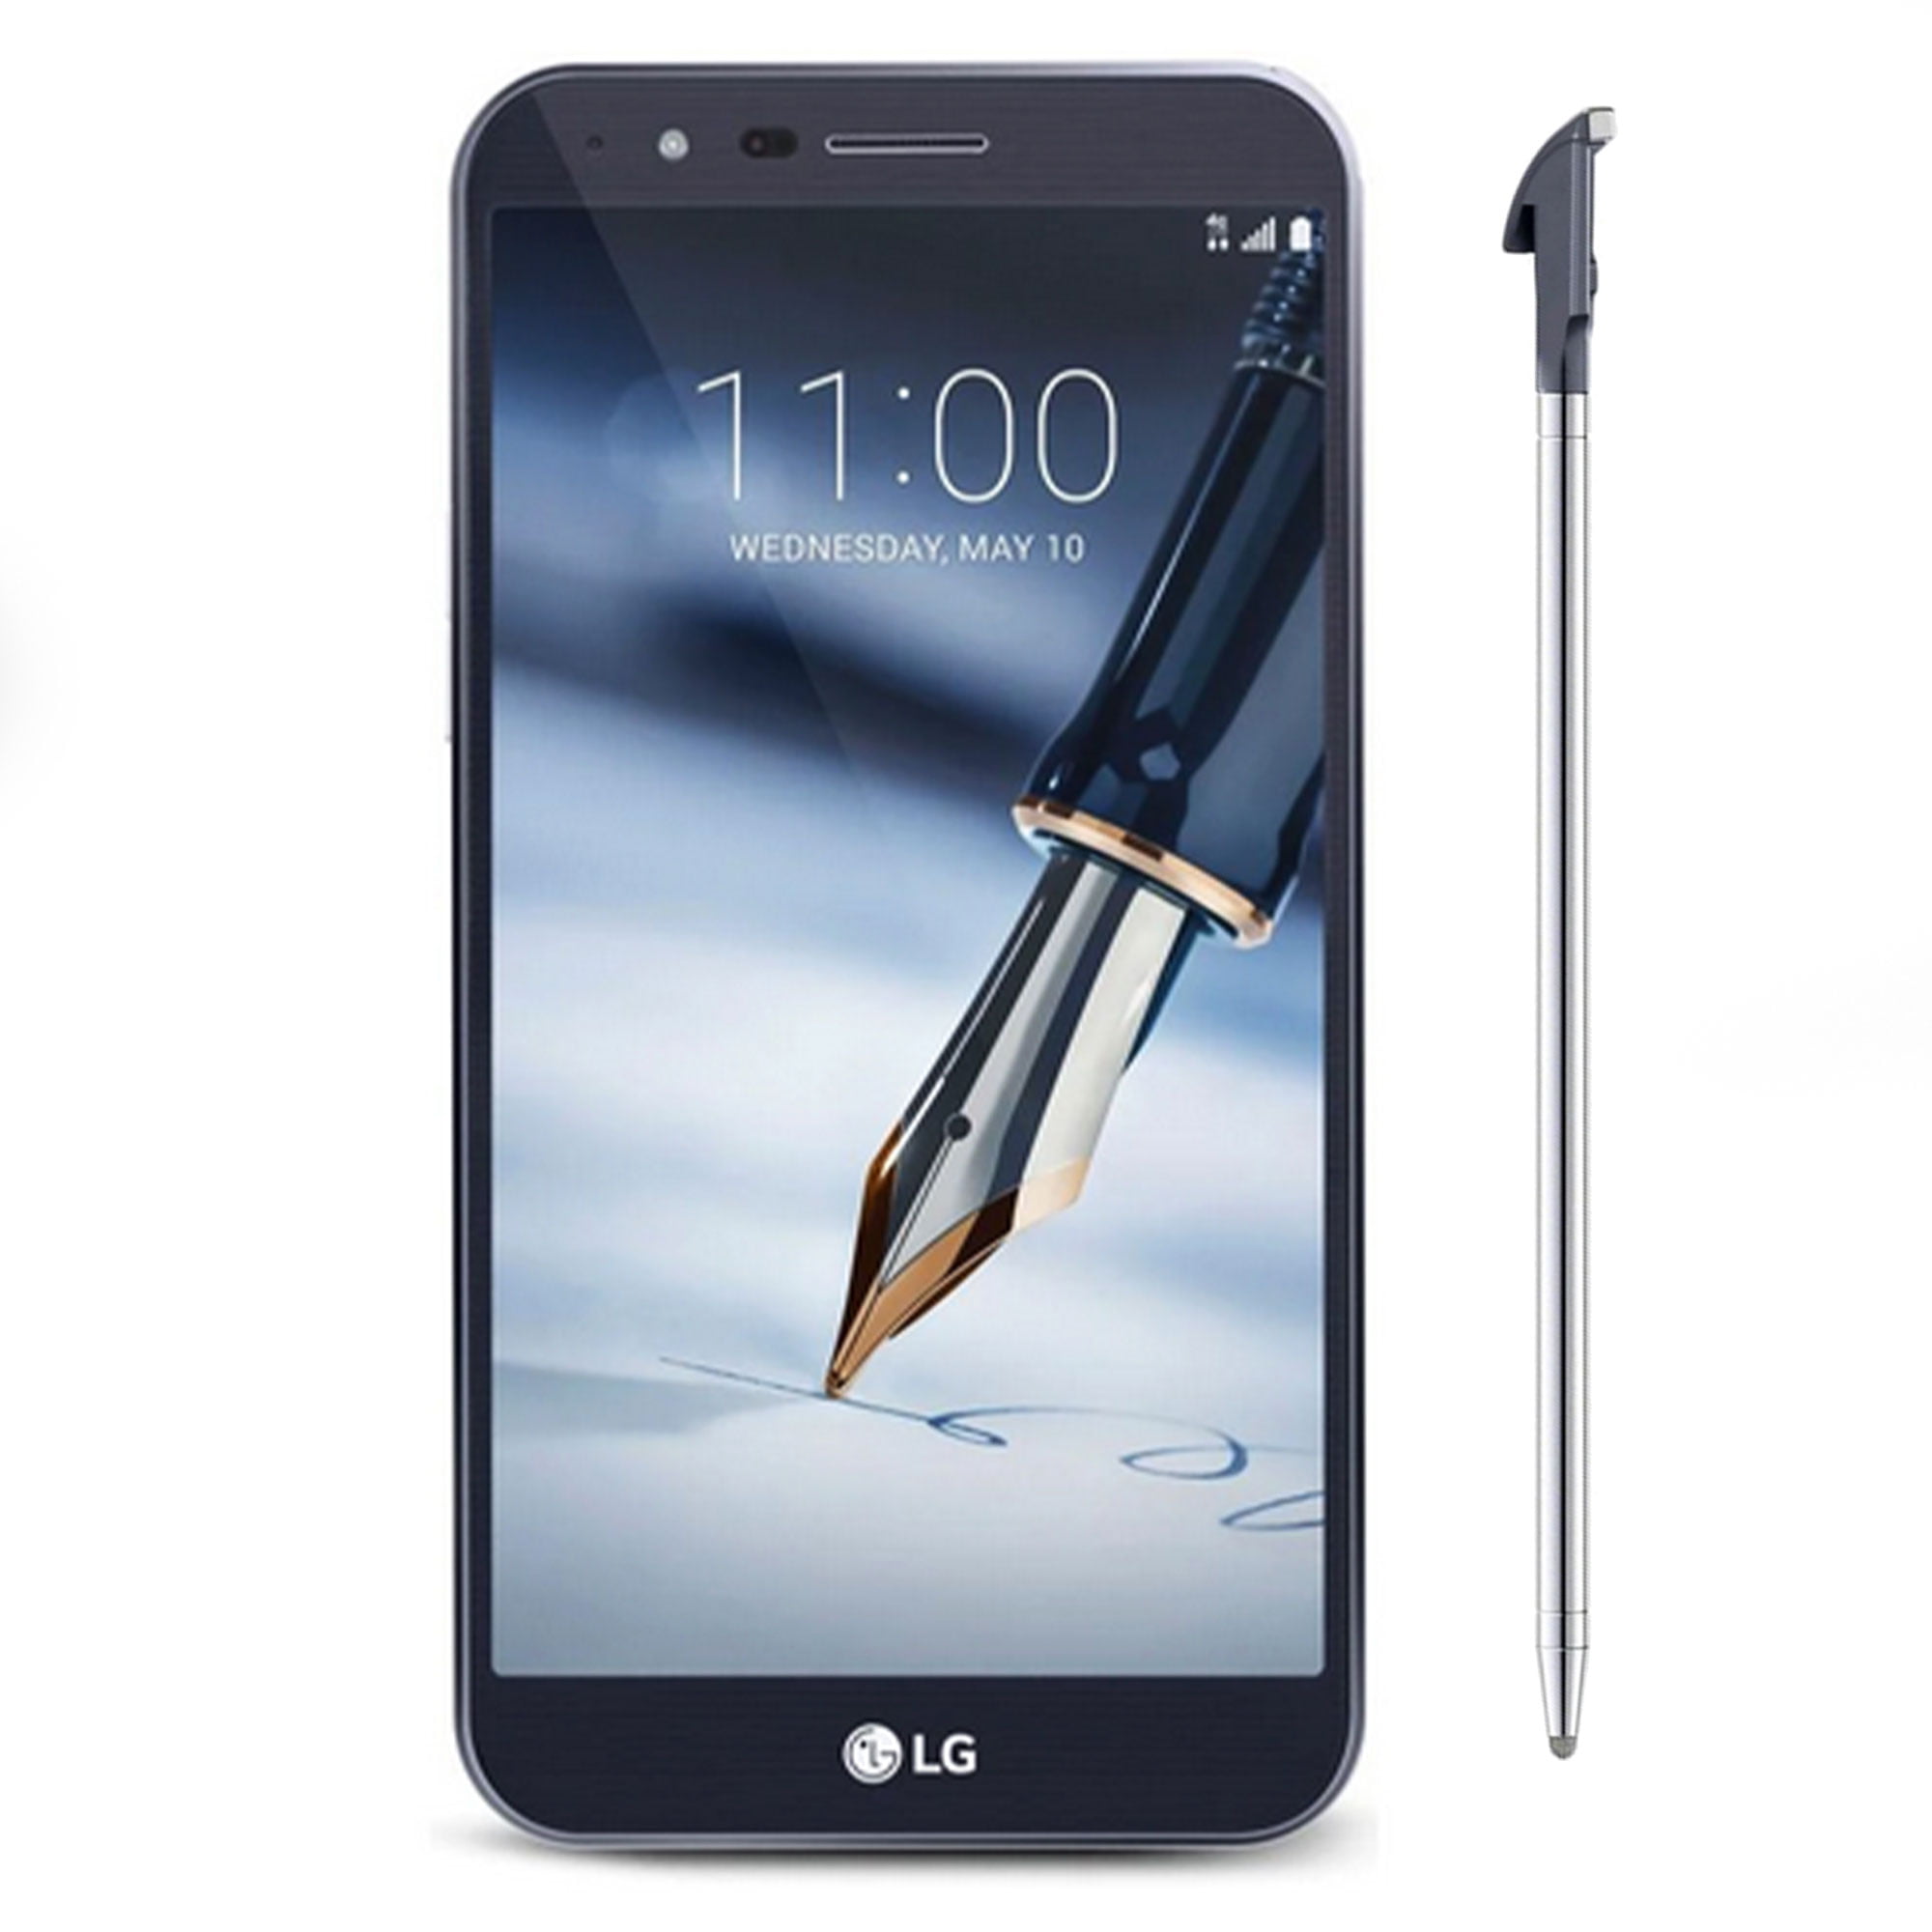 LG Stylo 3 Plus mang đến cho bạn trải nghiệm di động tuyệt vời với màn hình lớn và công nghệ viết bút tiện lợi. Đừng bỏ qua hình ảnh liên quan để khám phá thêm về tính năng hấp dẫn của chiếc điện thoại này.